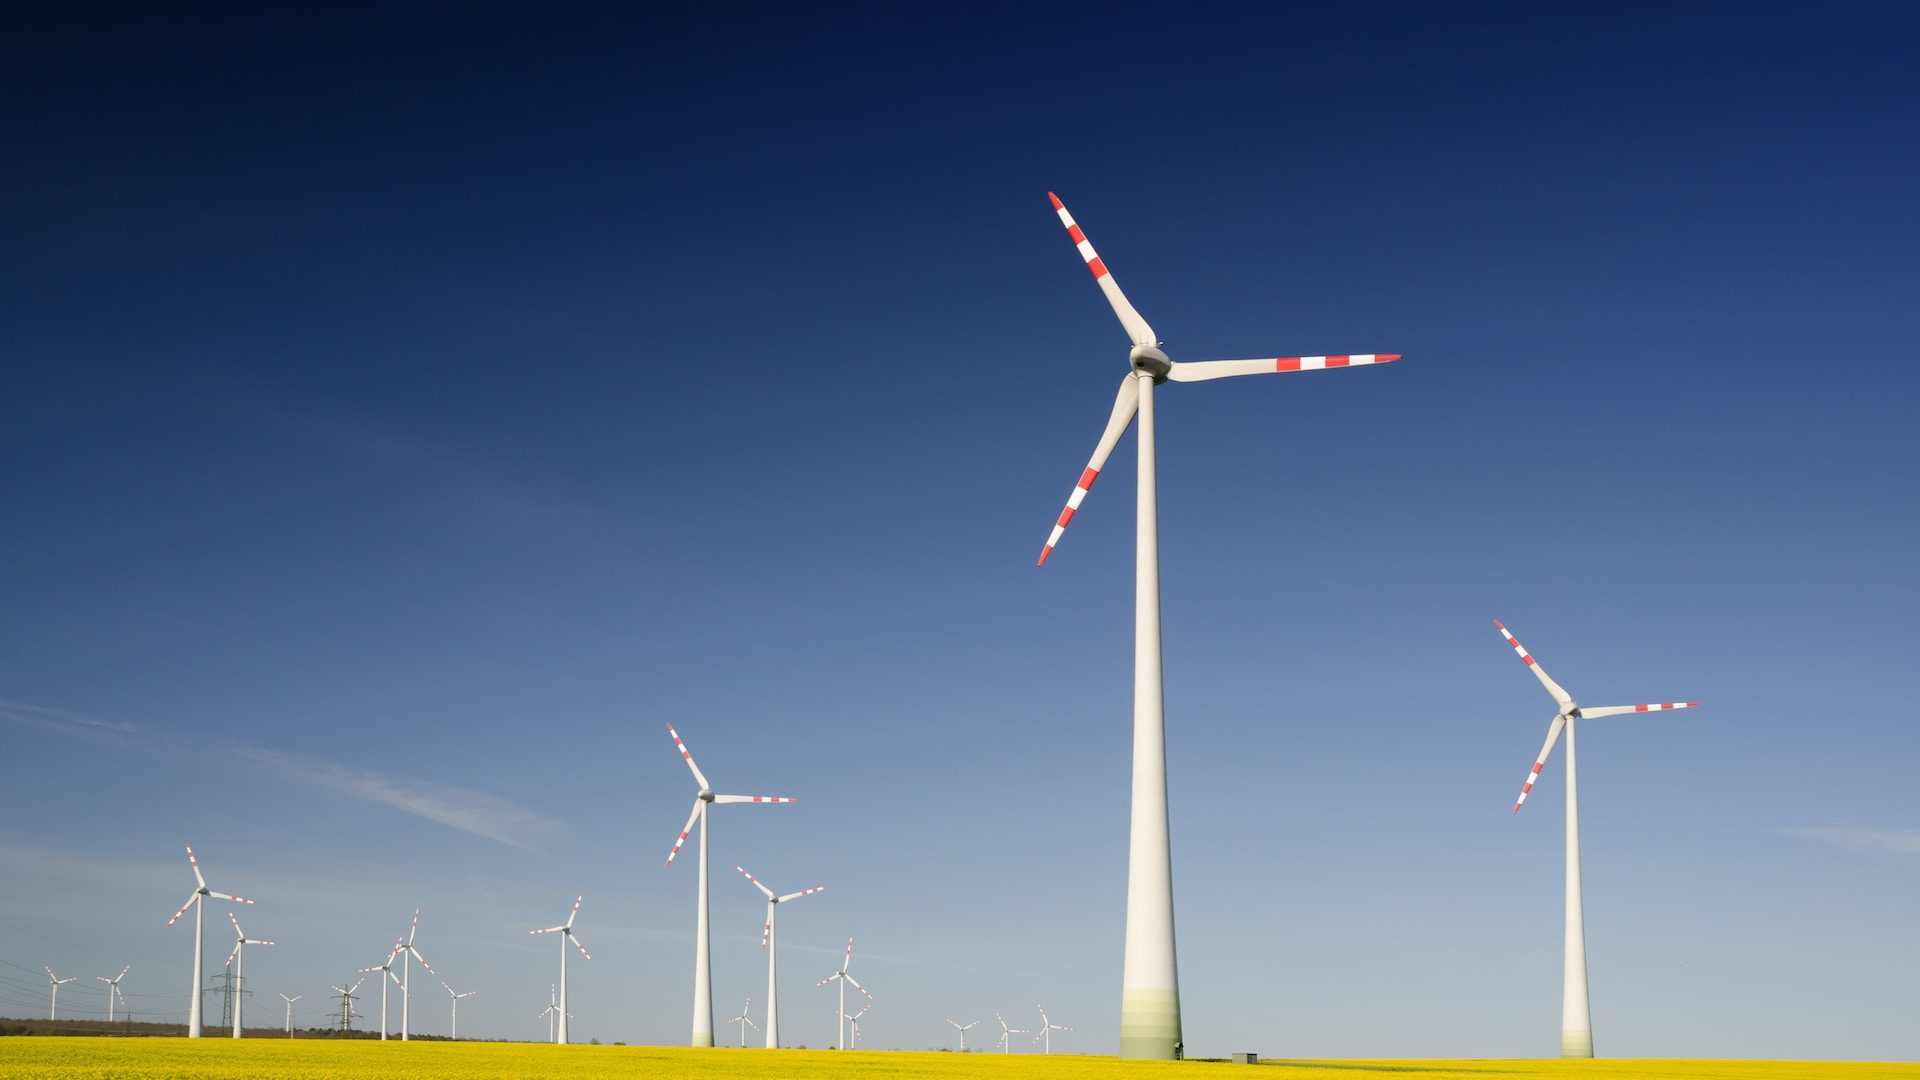 Rinnovabili • Transizione energetica: il picco di emissioni energetiche sarà nel 2024